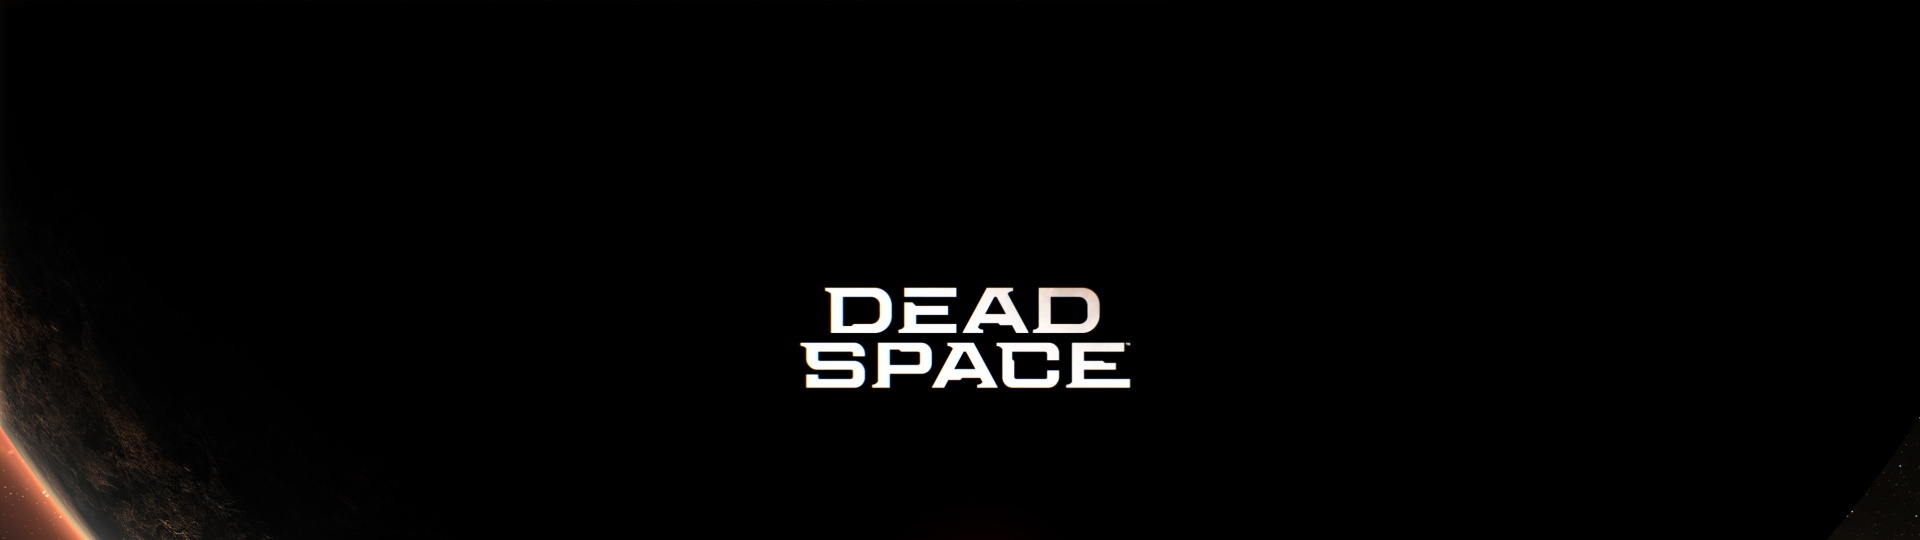 Remake klasického hororu Dead Space vyjde v lednu | Novinky